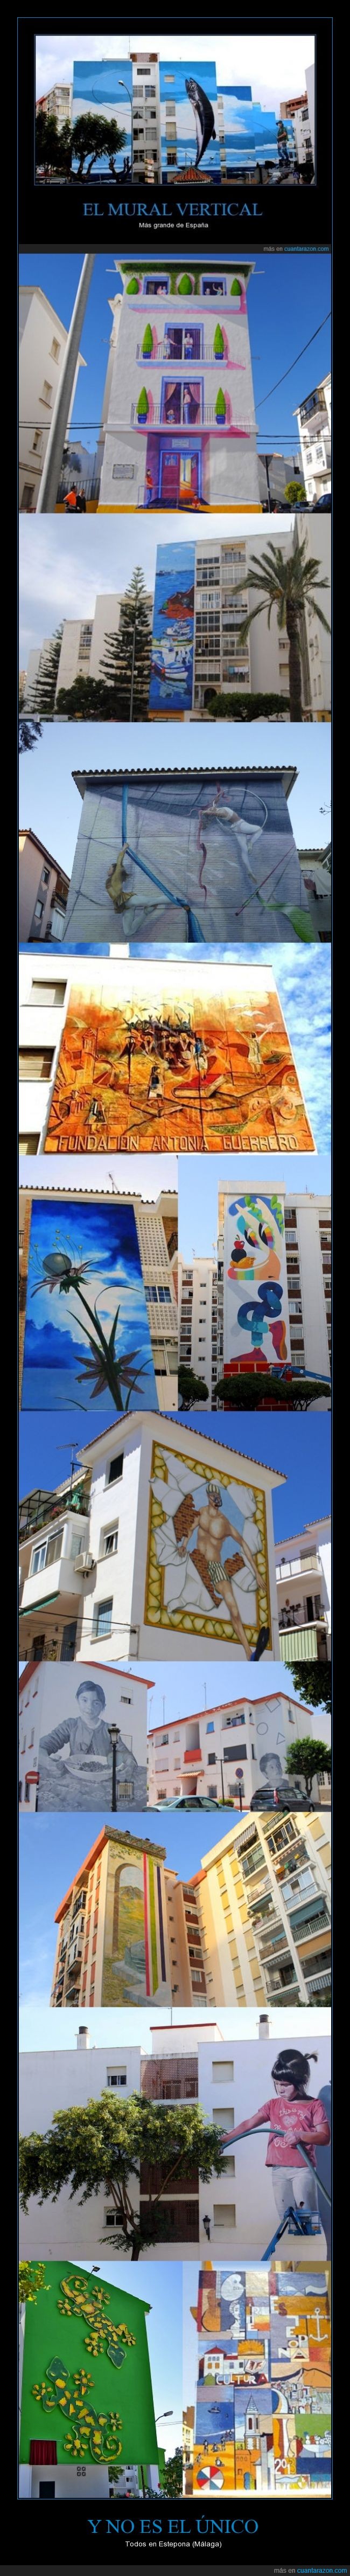 estepona,málaga,andalucía,arte,mural,street art,pintura,cultura